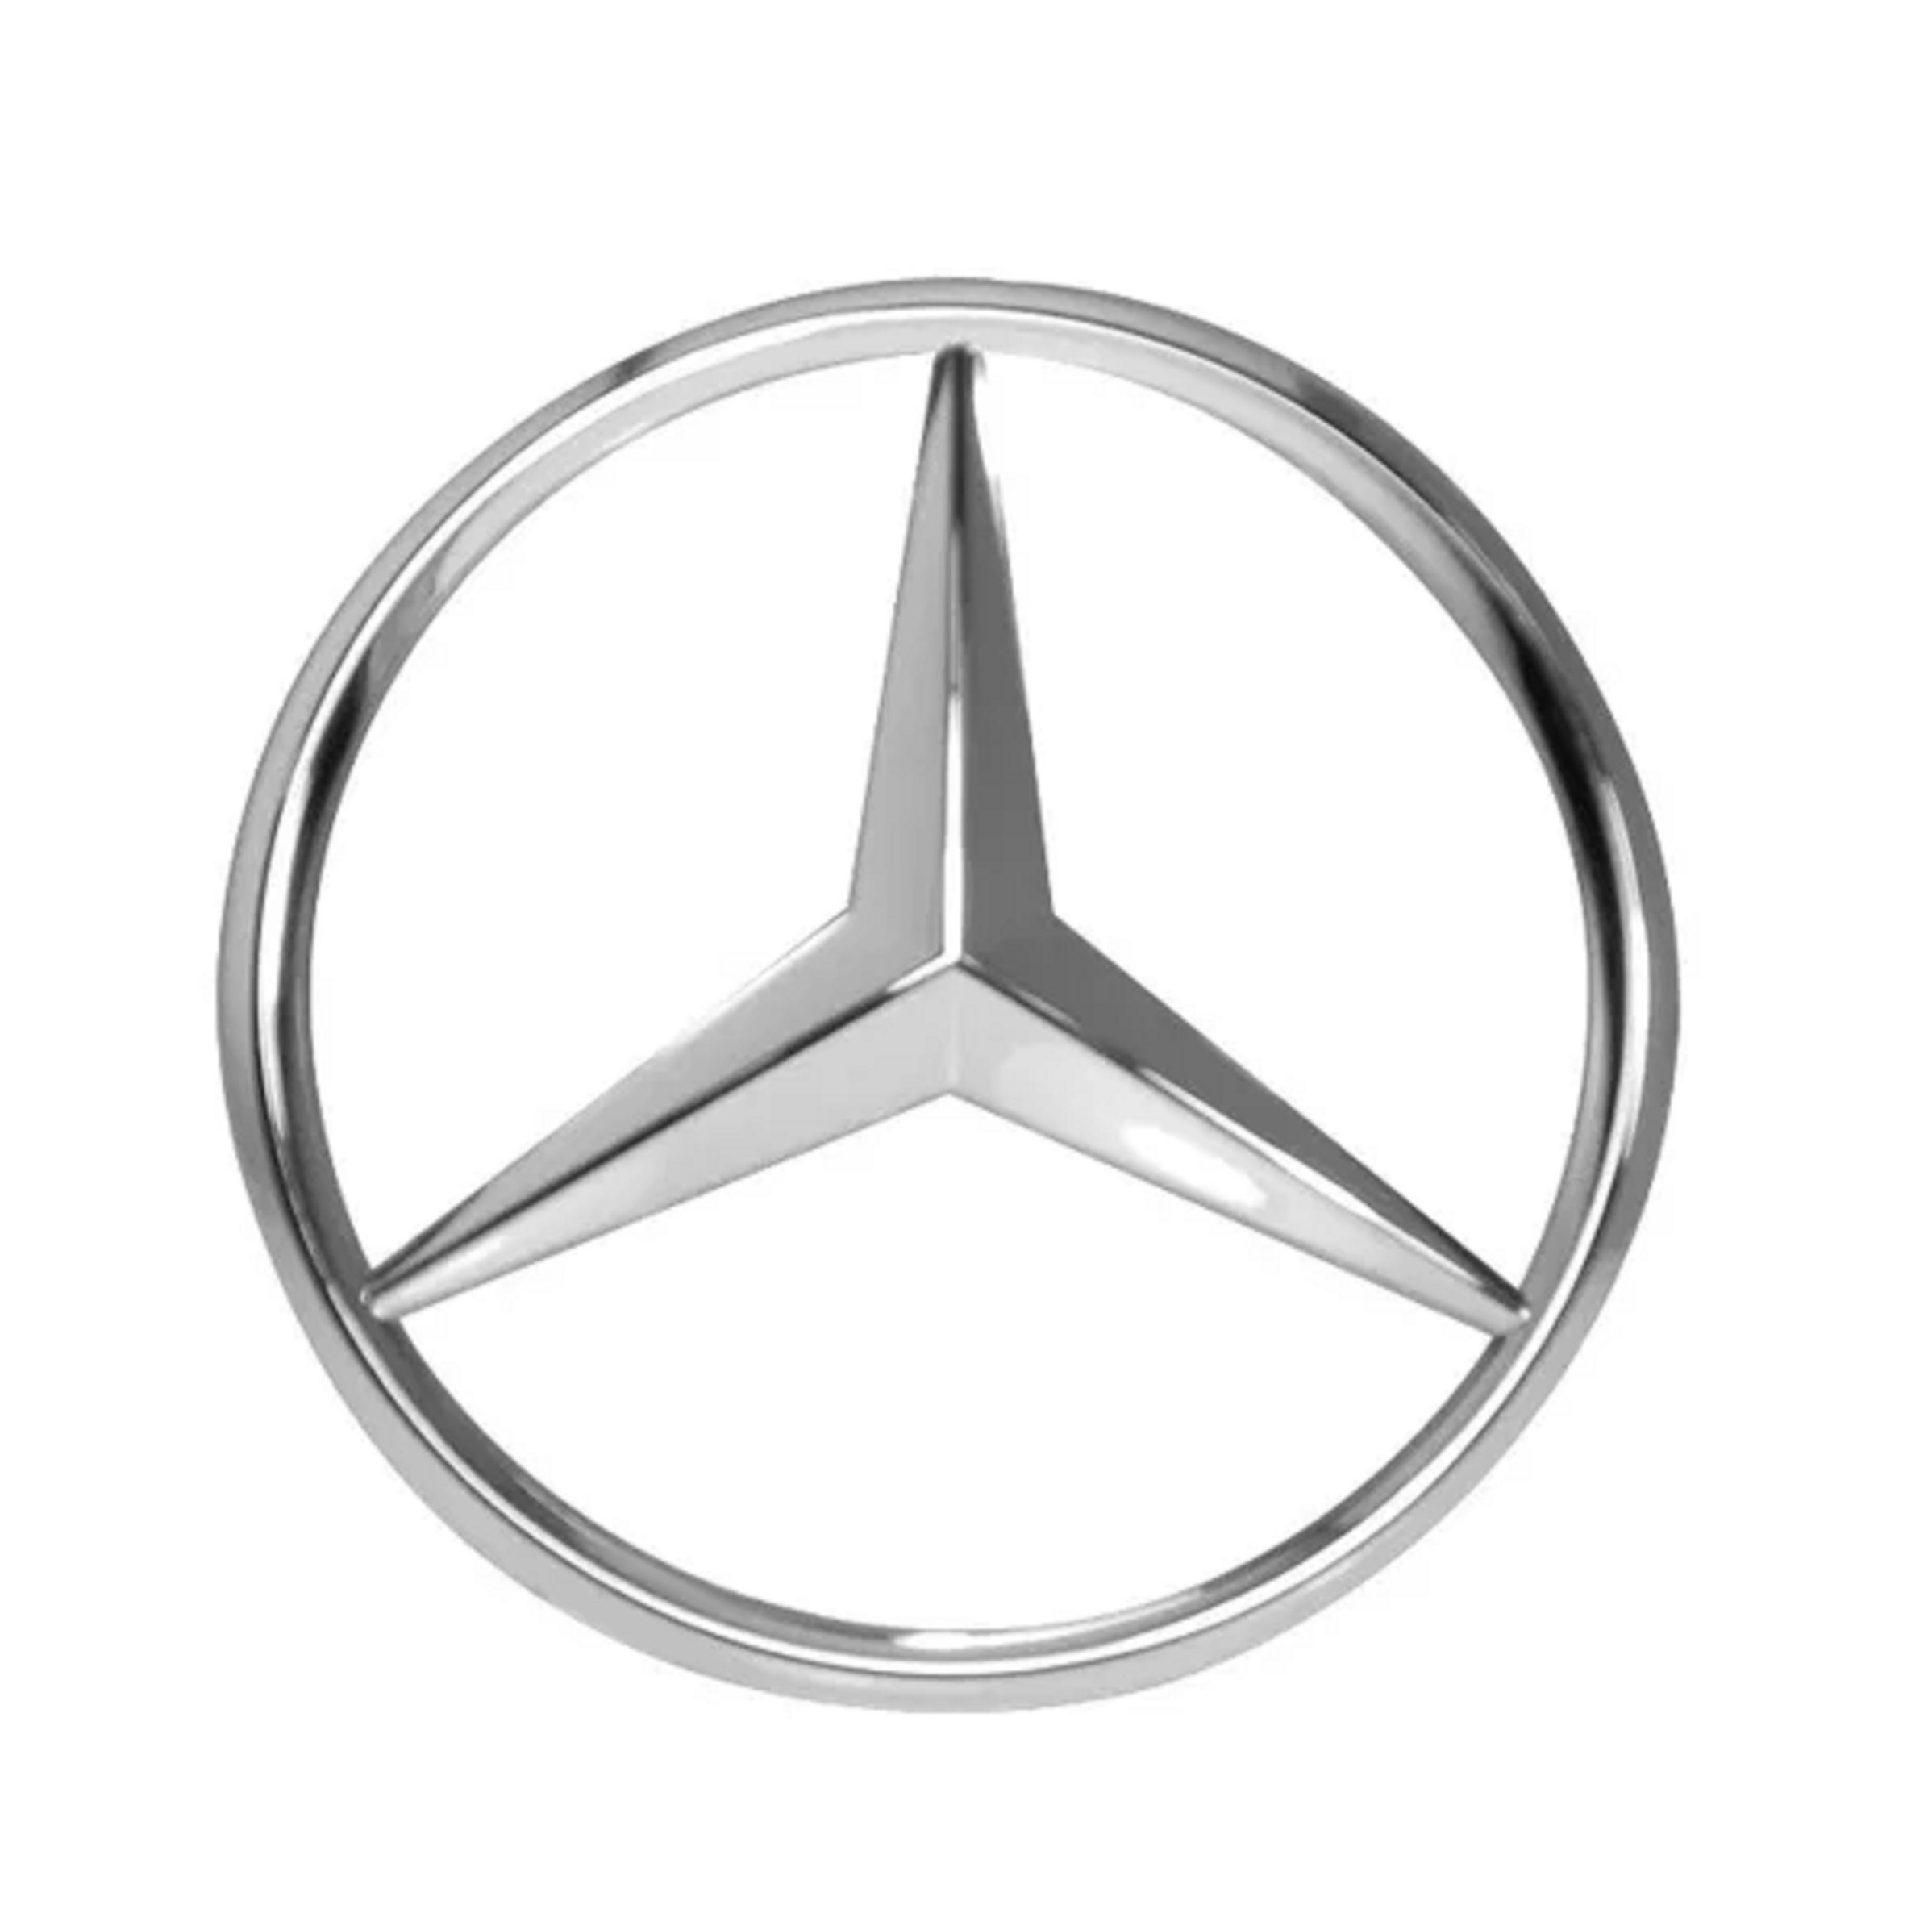 Etoile badge de capot logo Mercedes 44mm Classe A B C E S G R CLS